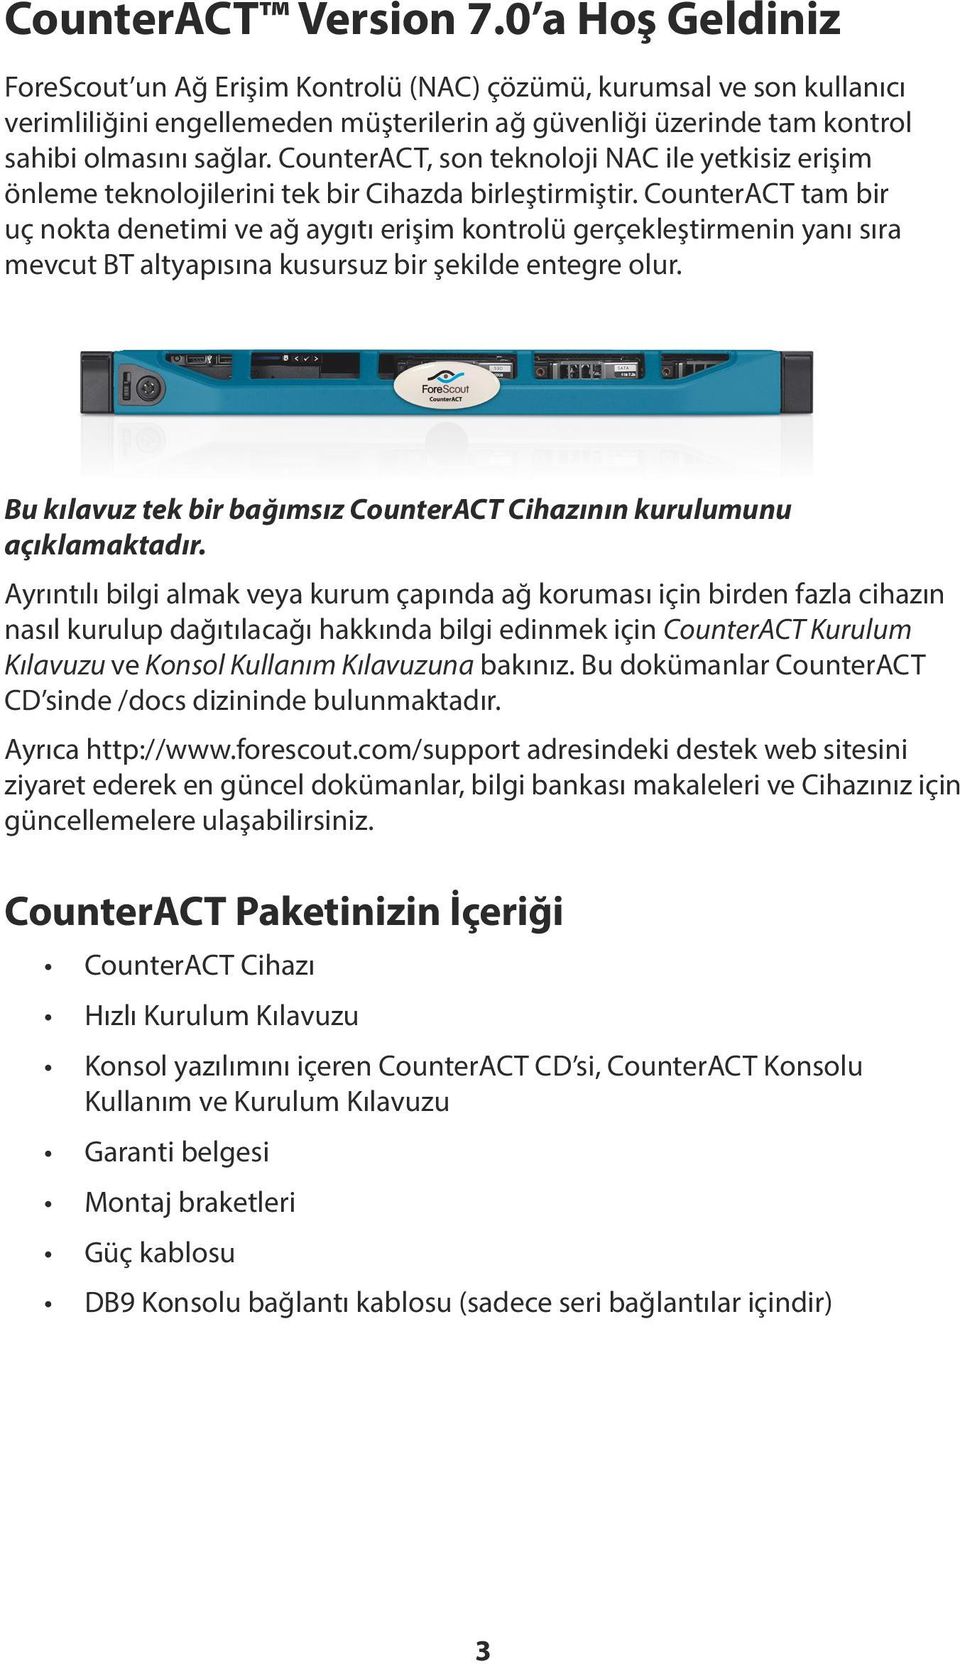 CounterACT, son teknoloji NAC ile yetkisiz erişim önleme teknolojilerini tek bir Cihazda birleştirmiştir.